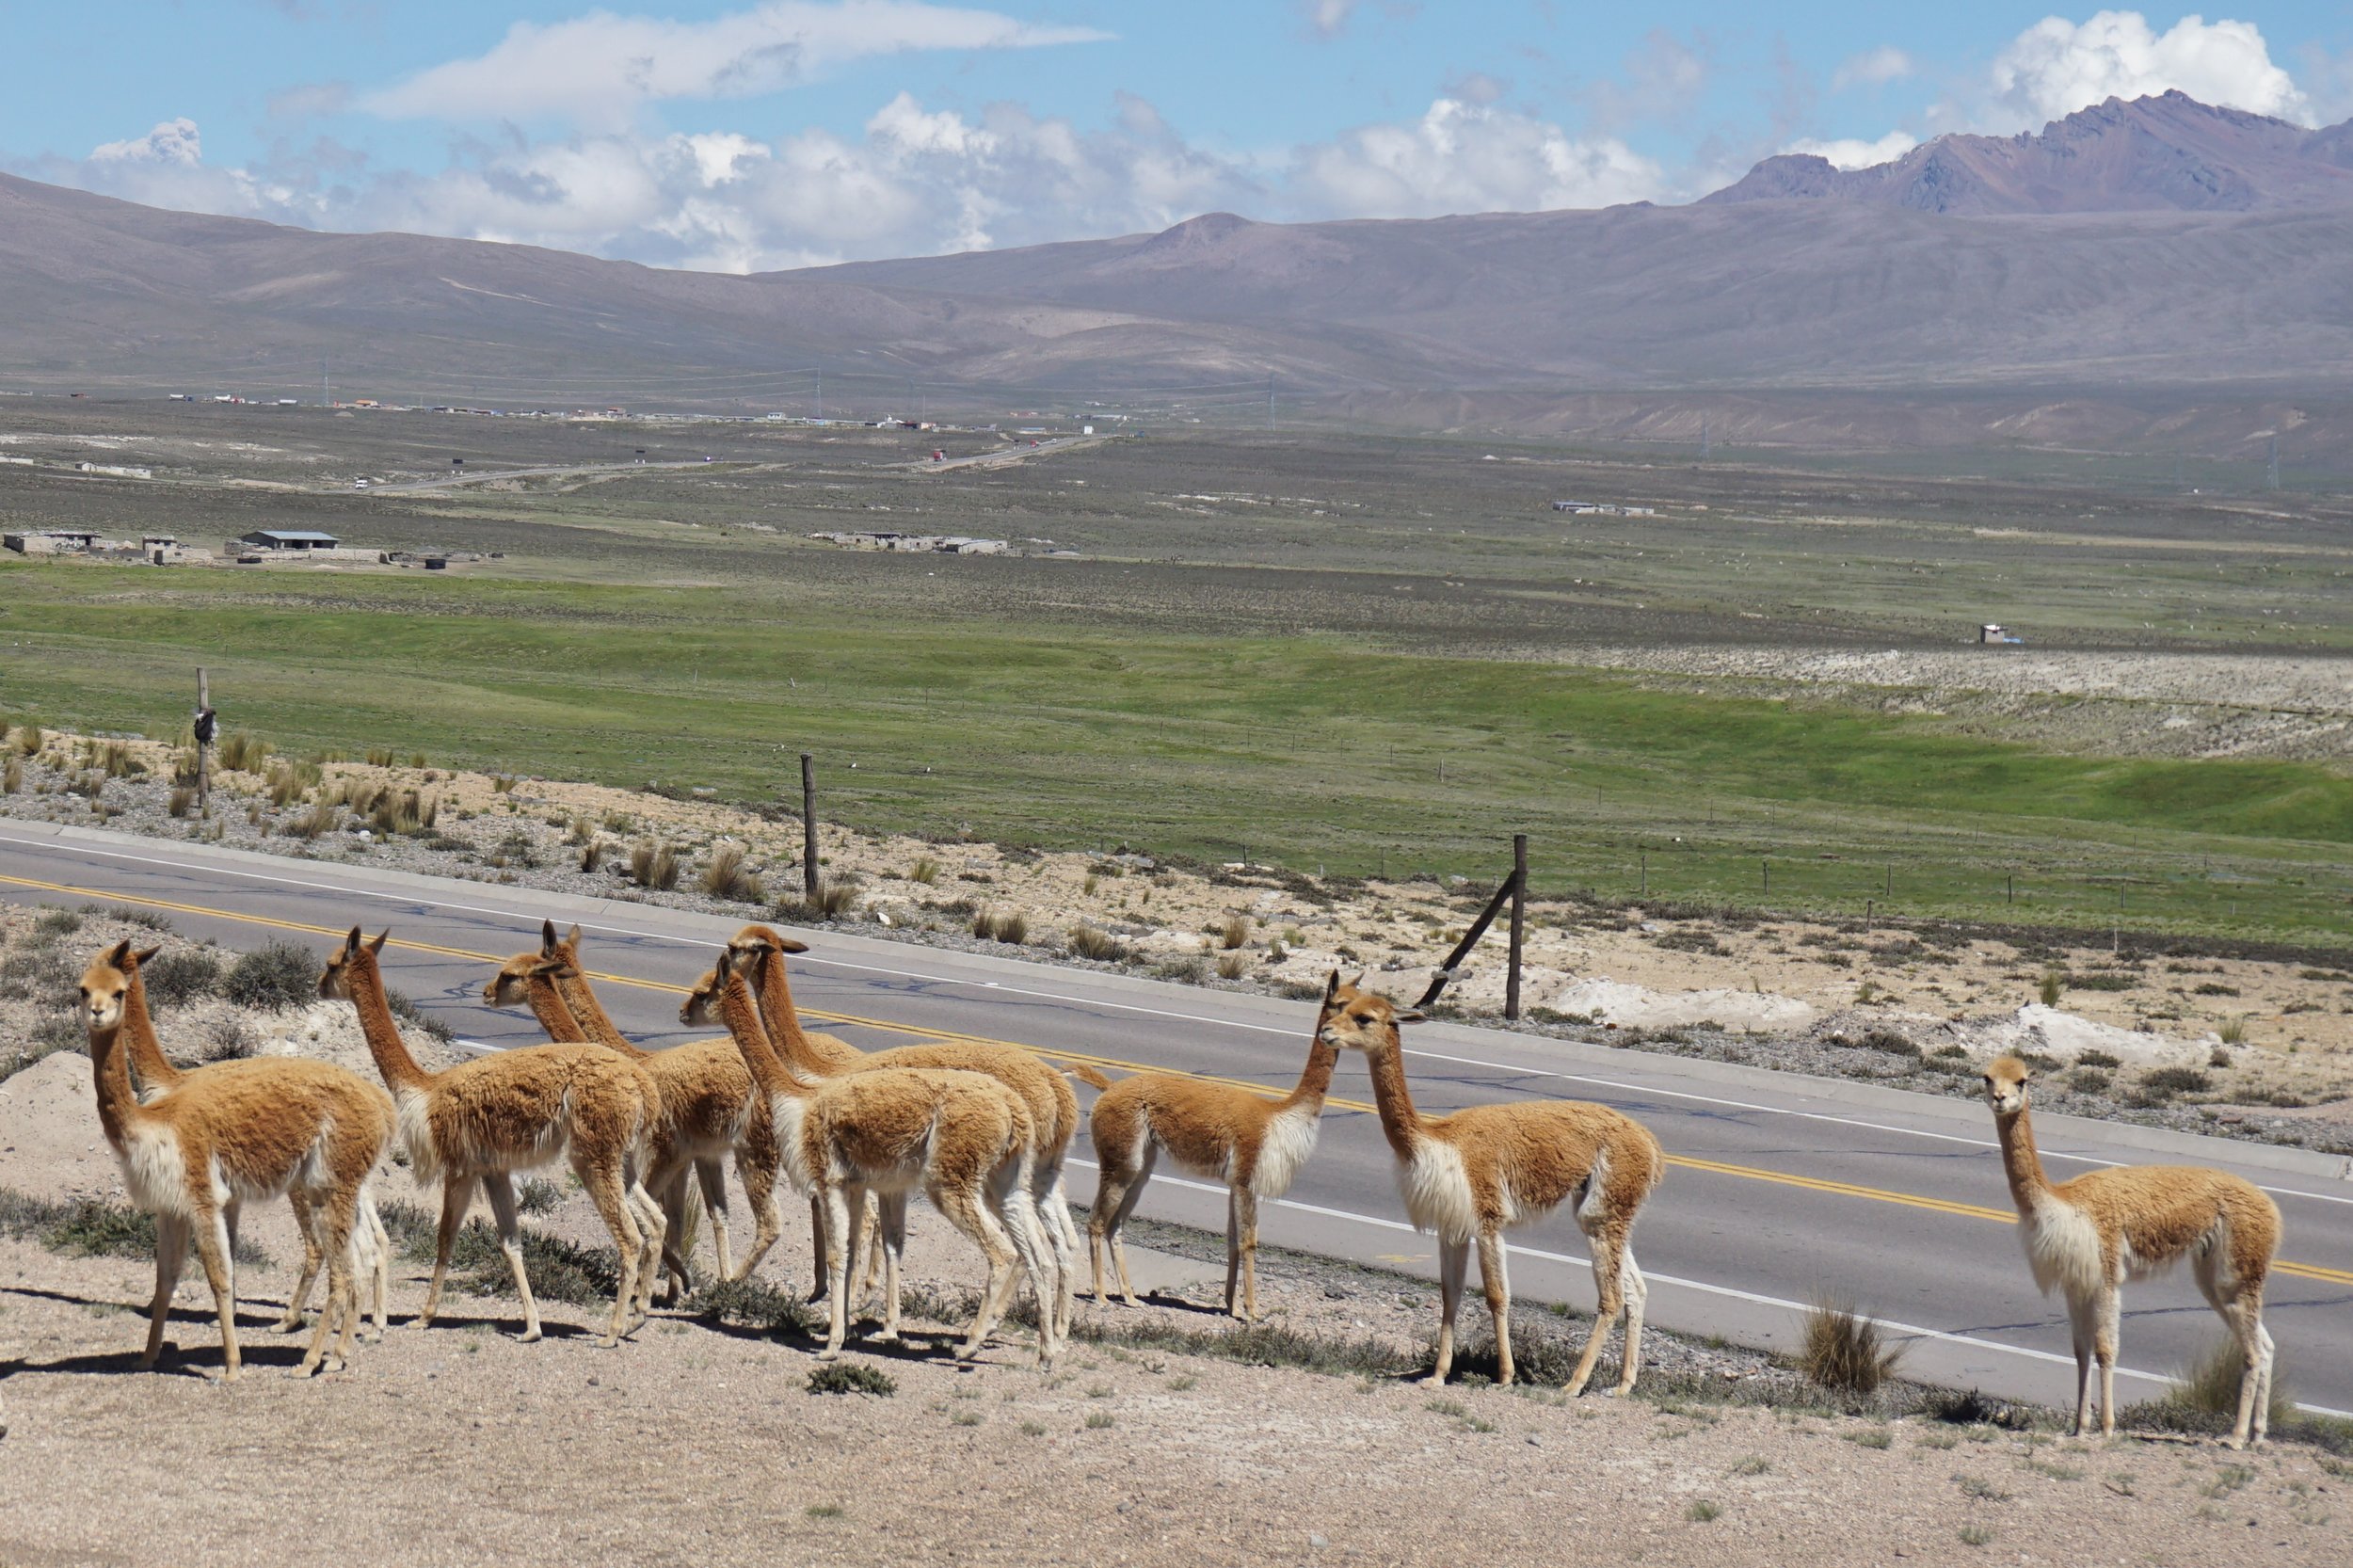  More vicuñas&nbsp; 